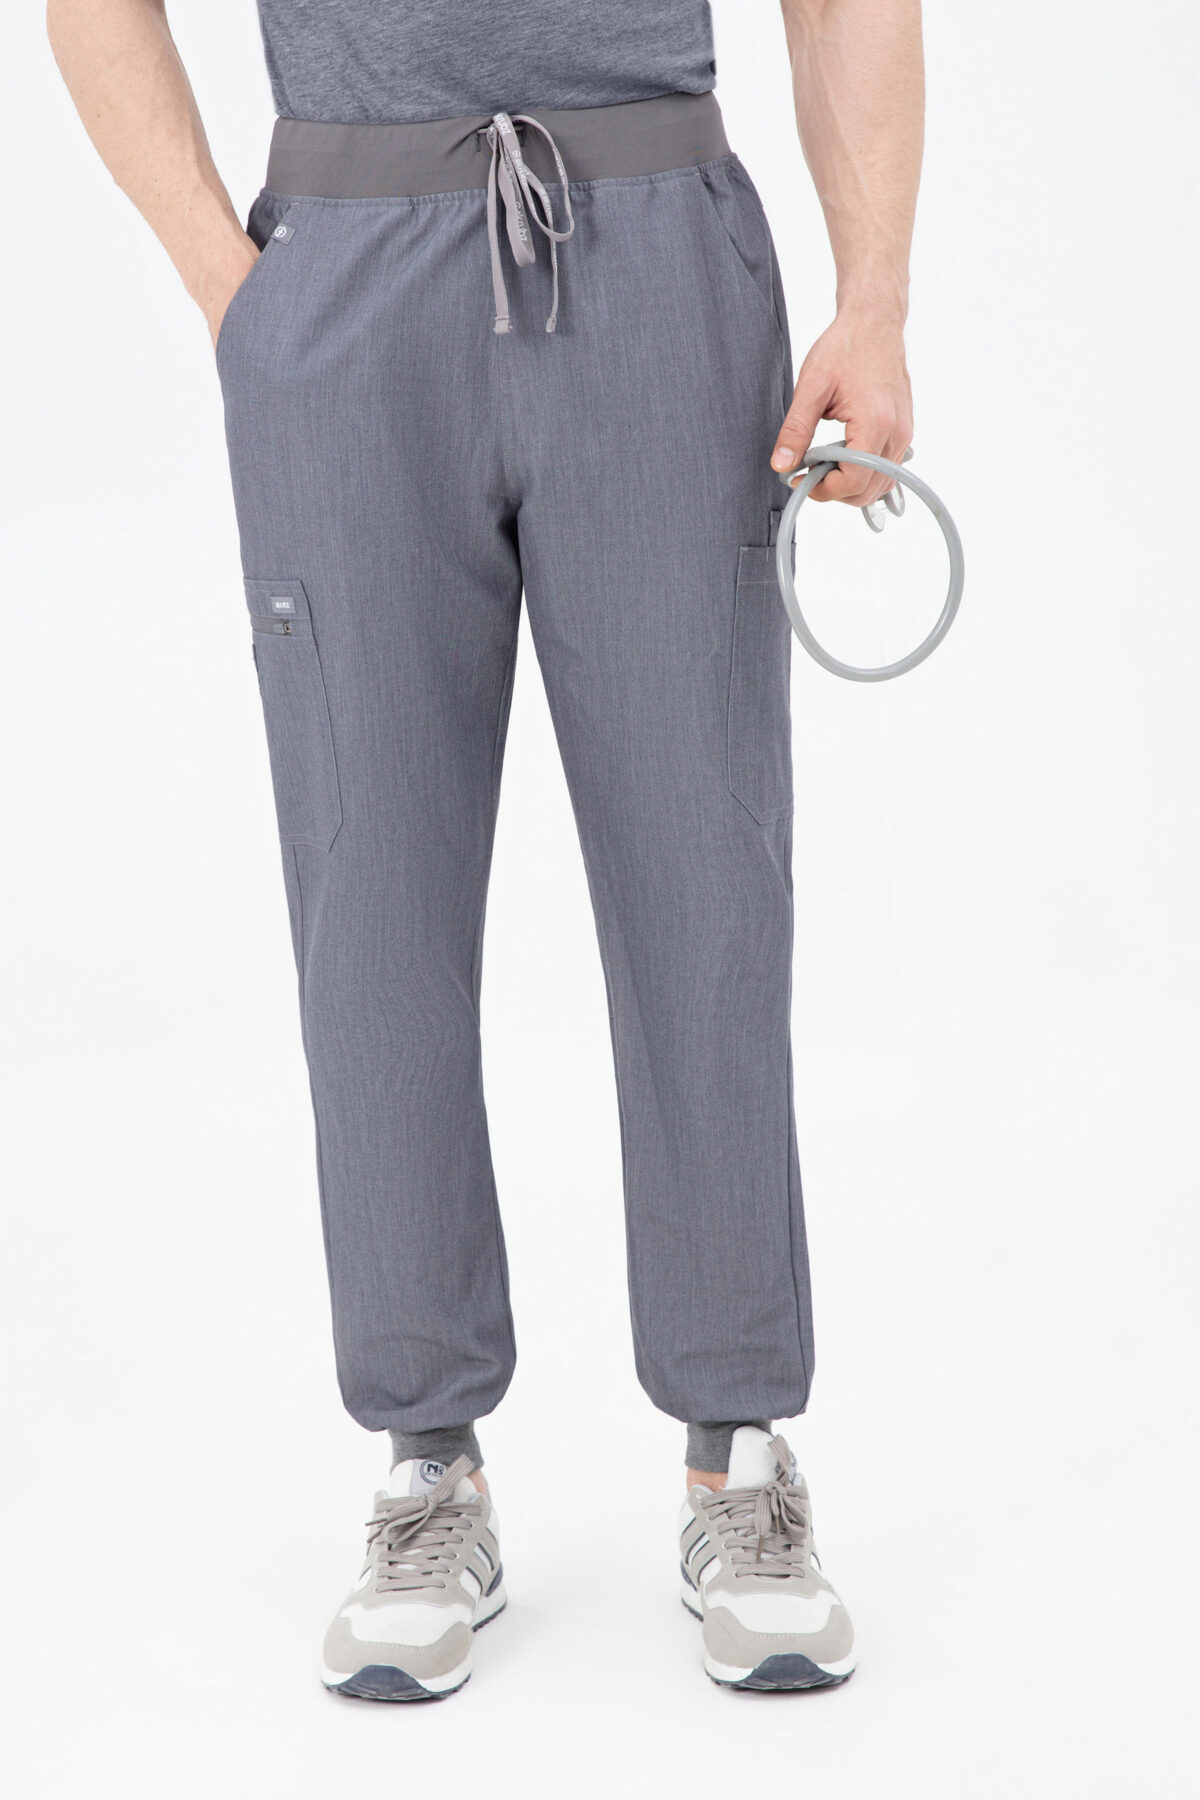 Shiro Yoga Purple Scrub Pants For Mens